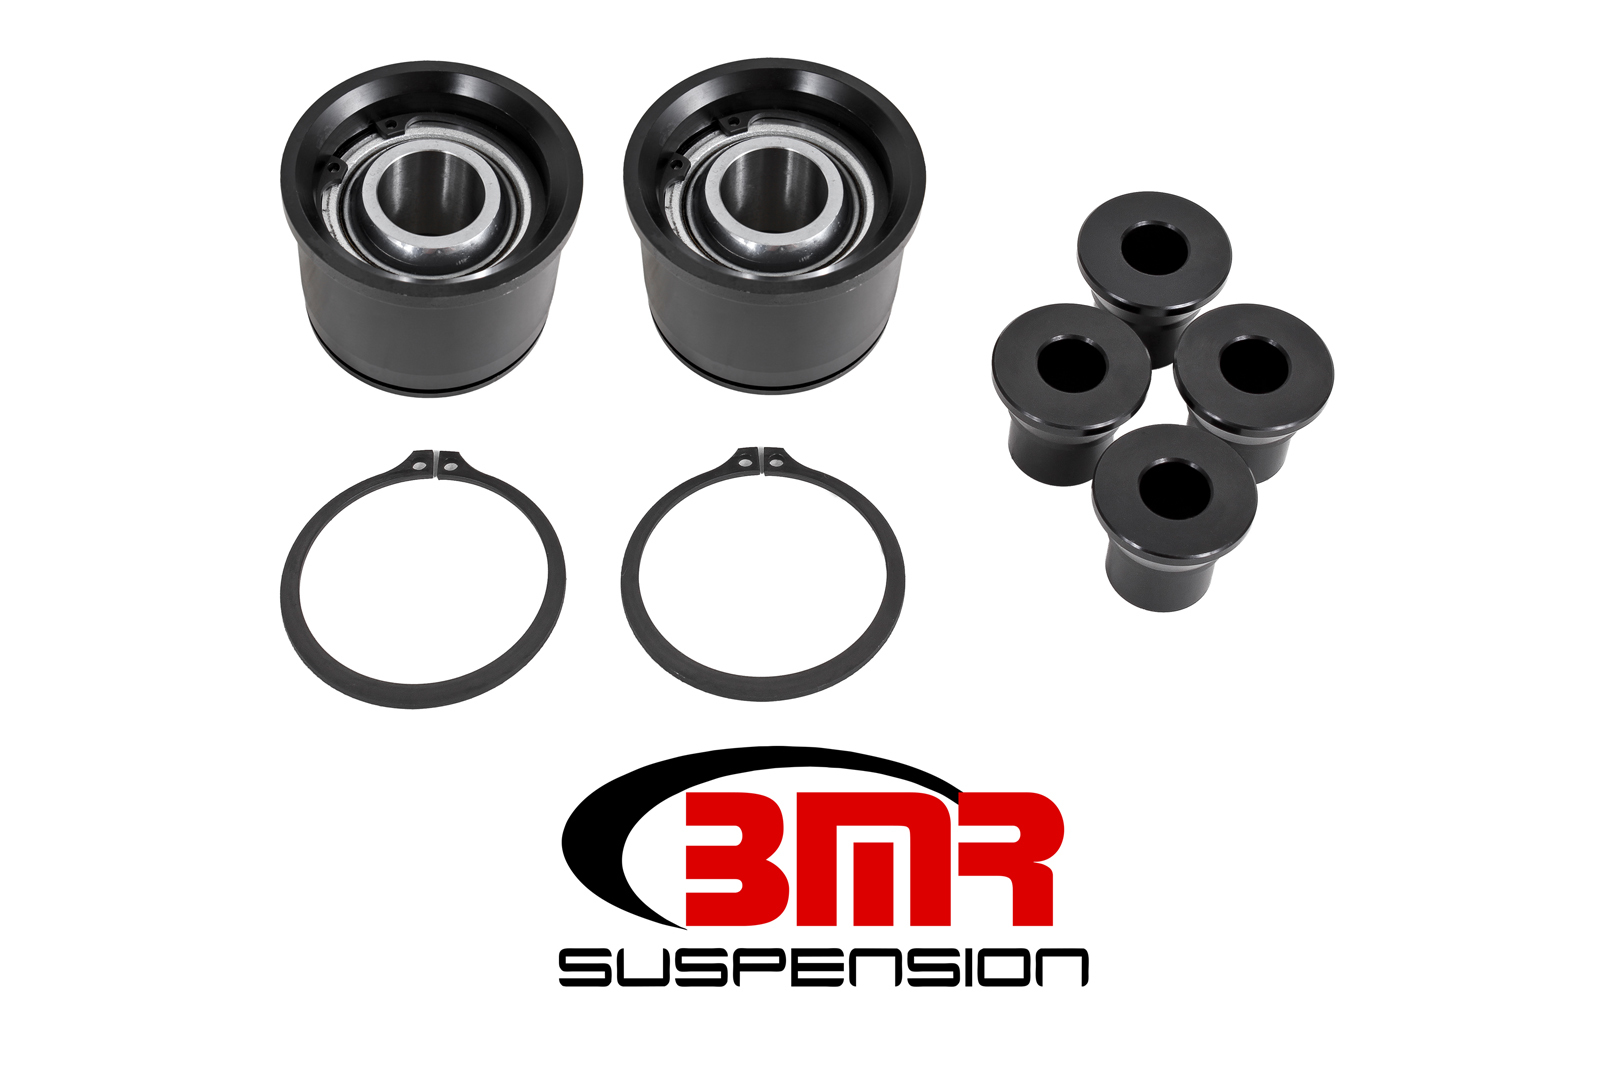 BMR Suspension Control Arm Bearing, Rear, Lower, Bearing/Bushing, Ford Mustang 2015-17, Kit